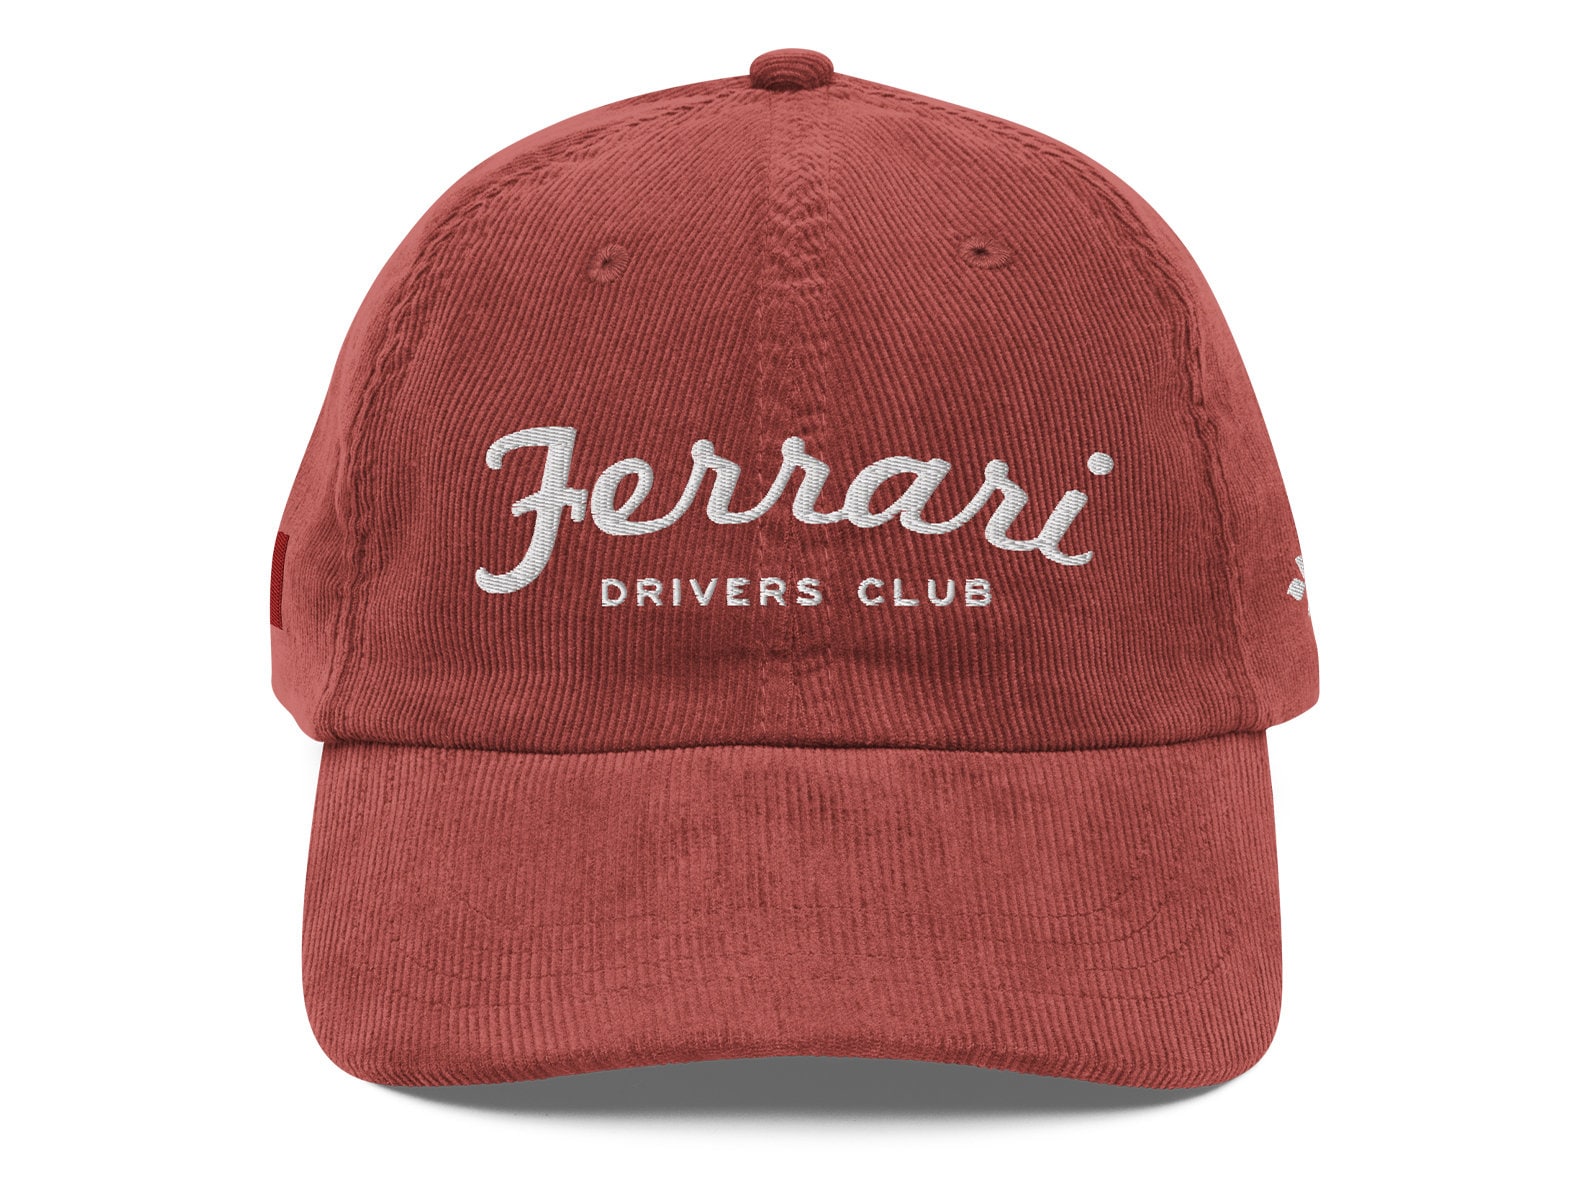 Cappellino ufficiale Marlboro Ferrari F1 2000, indossato da